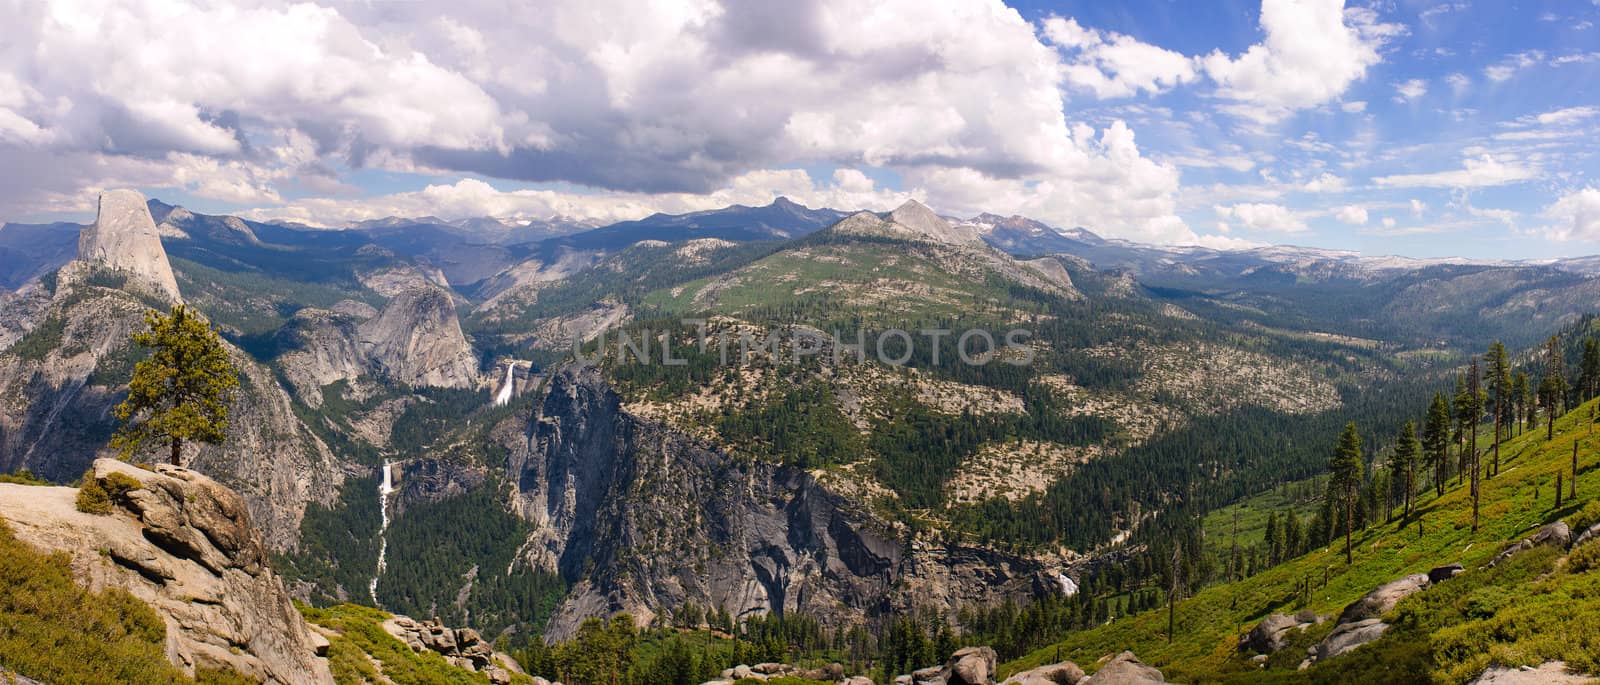 Yosemite panorama by jeffbanke